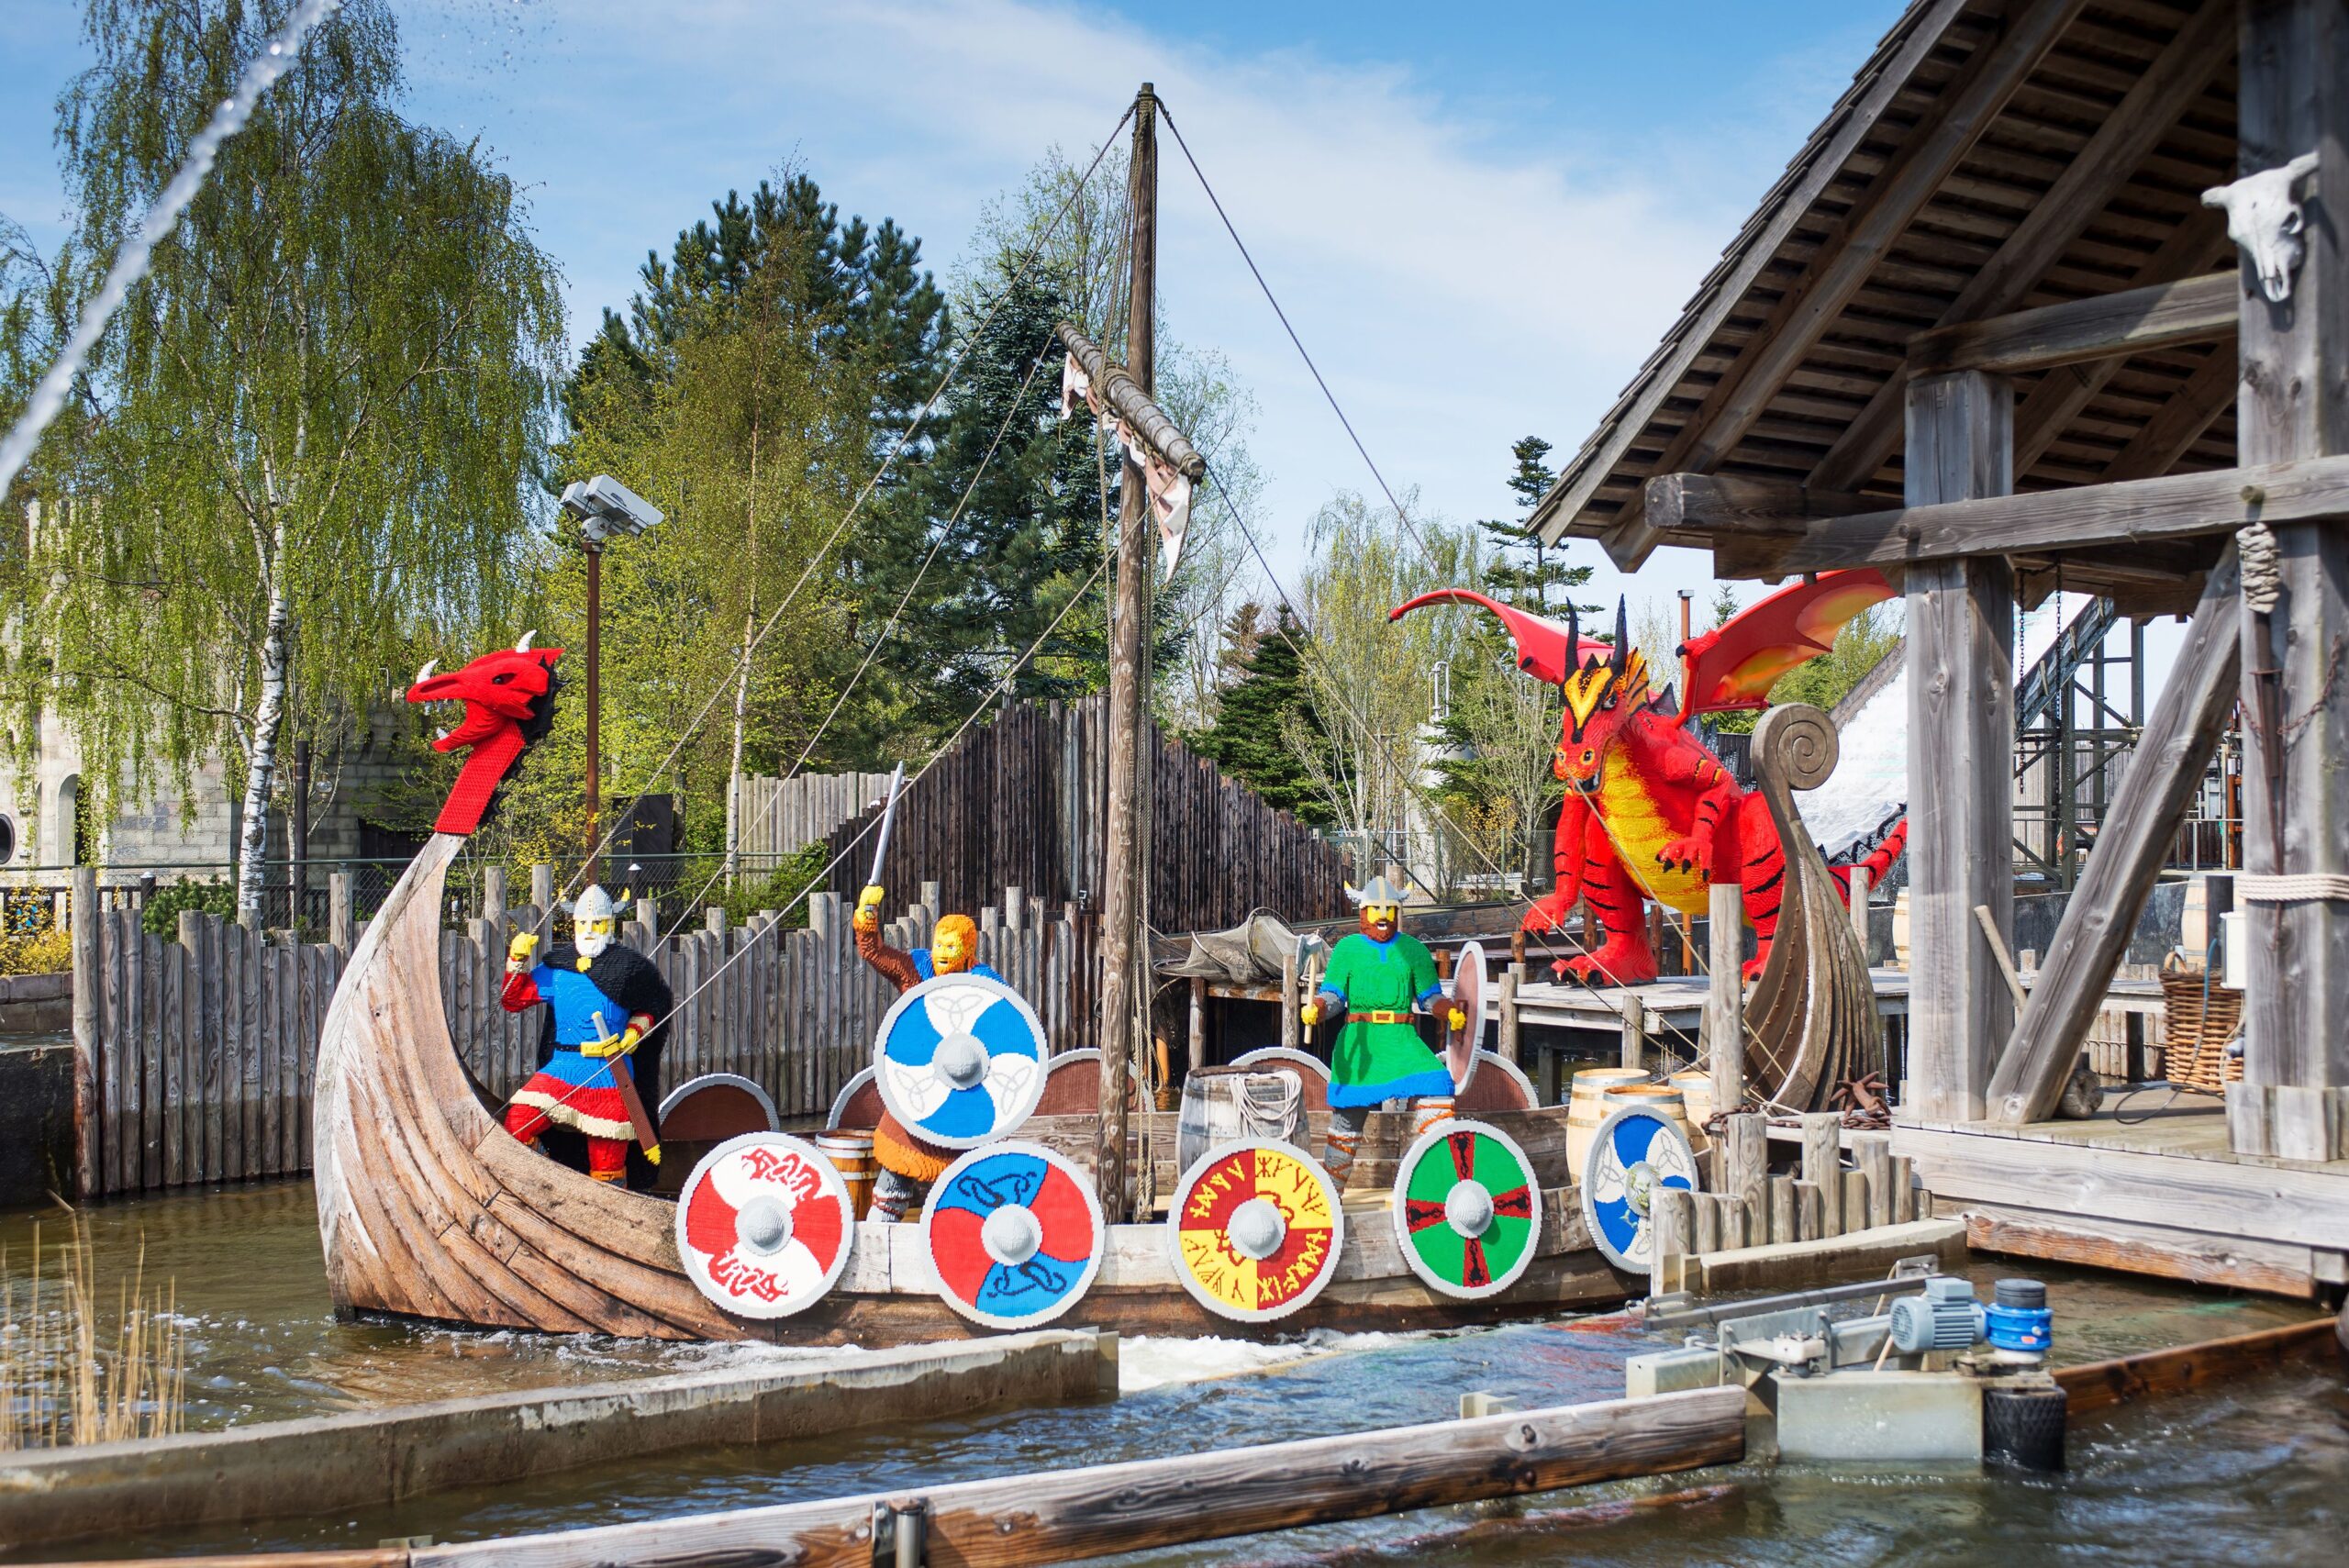 Legoland, Andersen in Vikingi<br />
Odhodi: 26.4., 28.6., 19.7., 9.8., 23.8., 5 dni